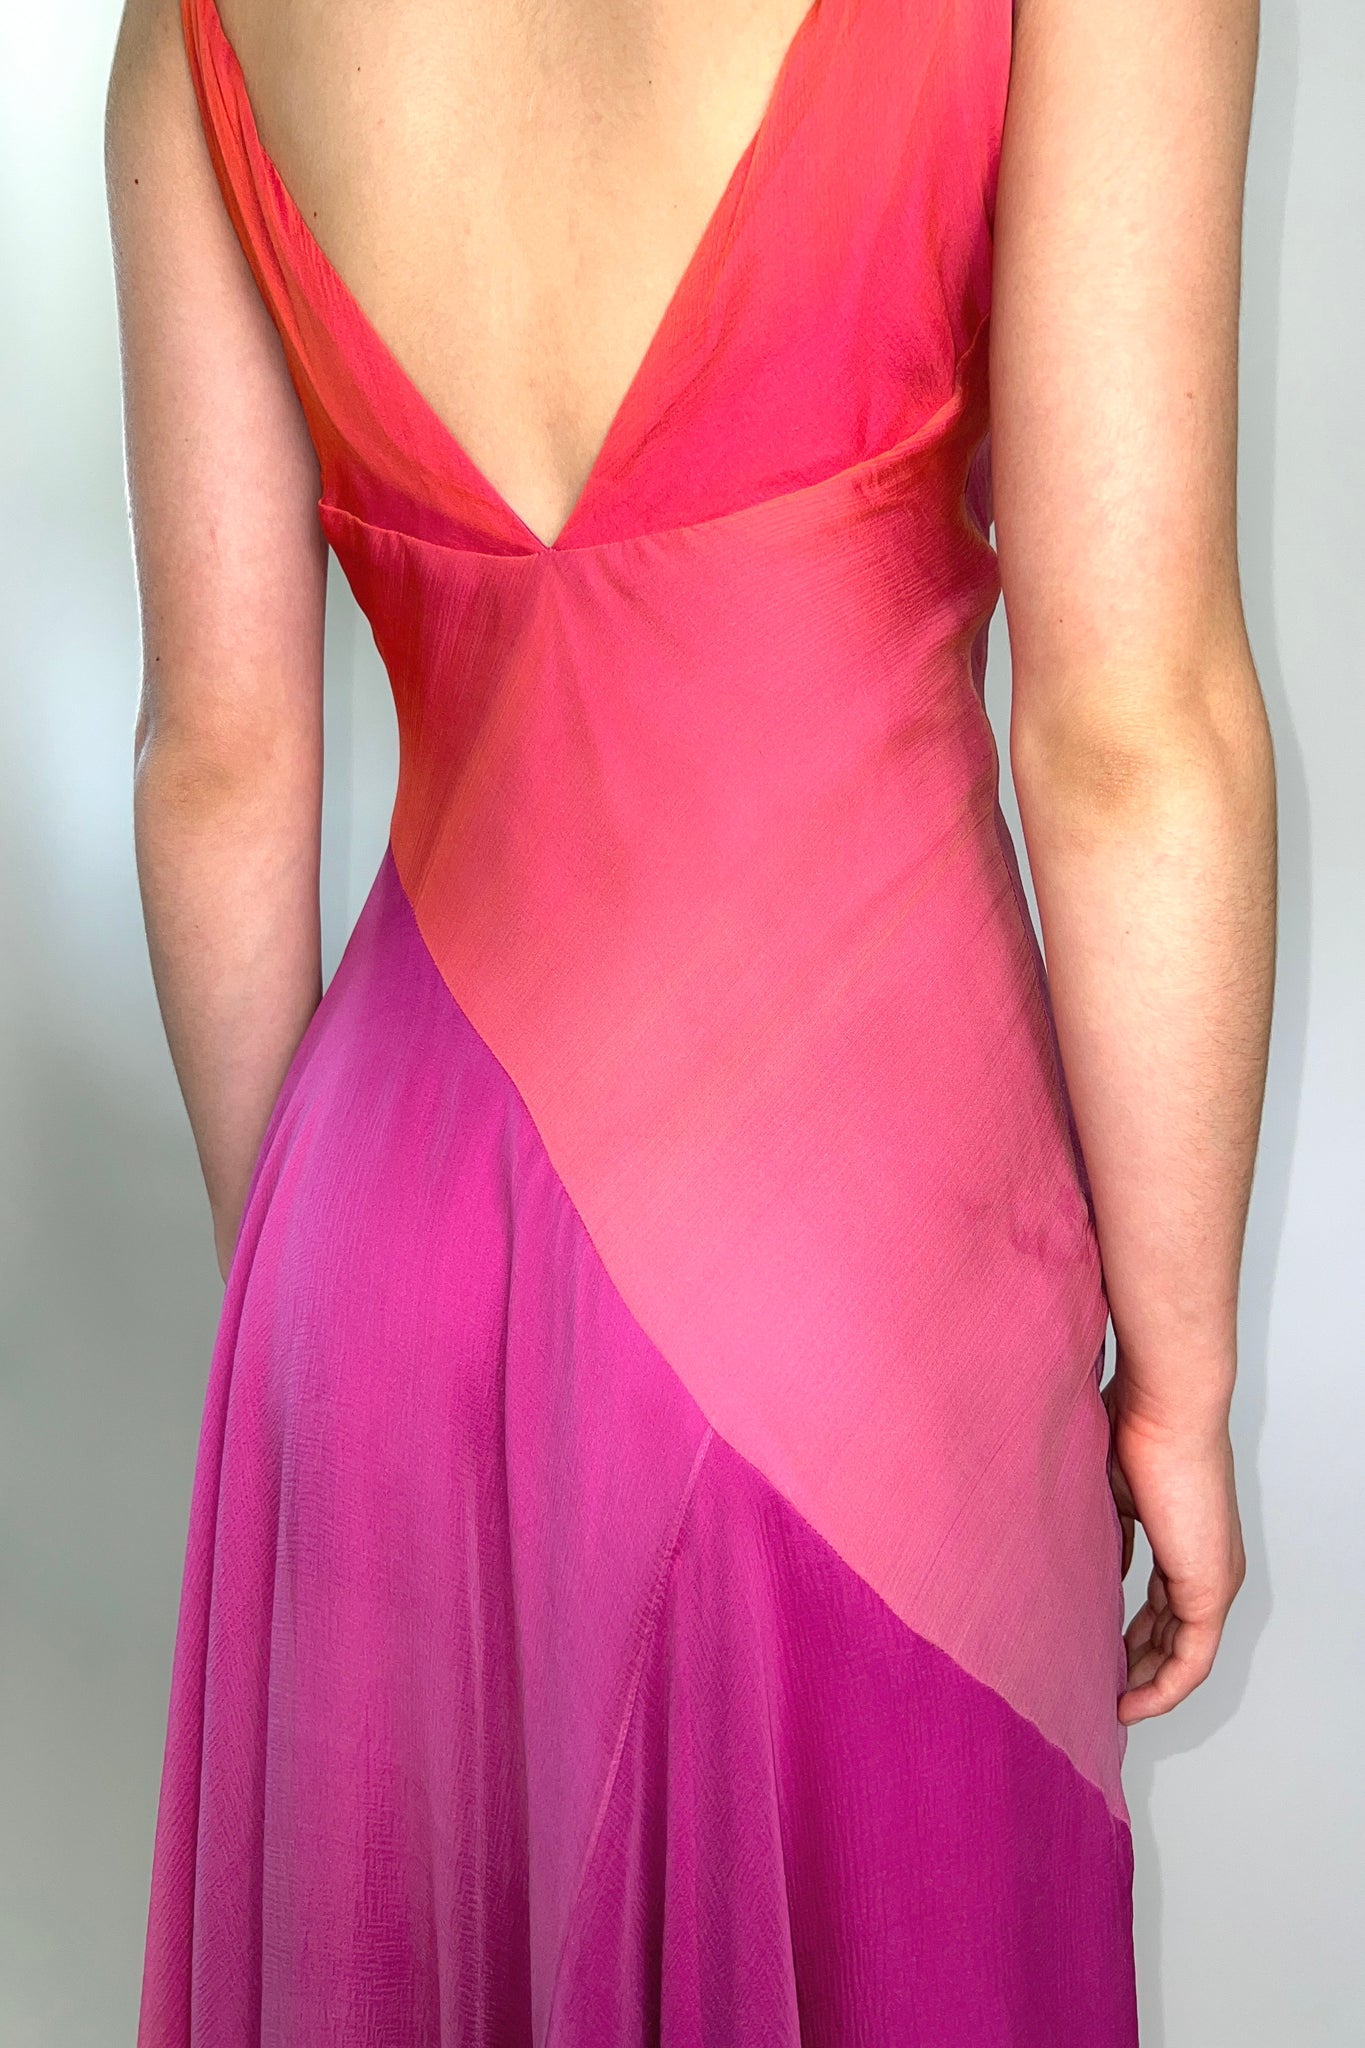 Pink Ombré Silk Chiffon Gown